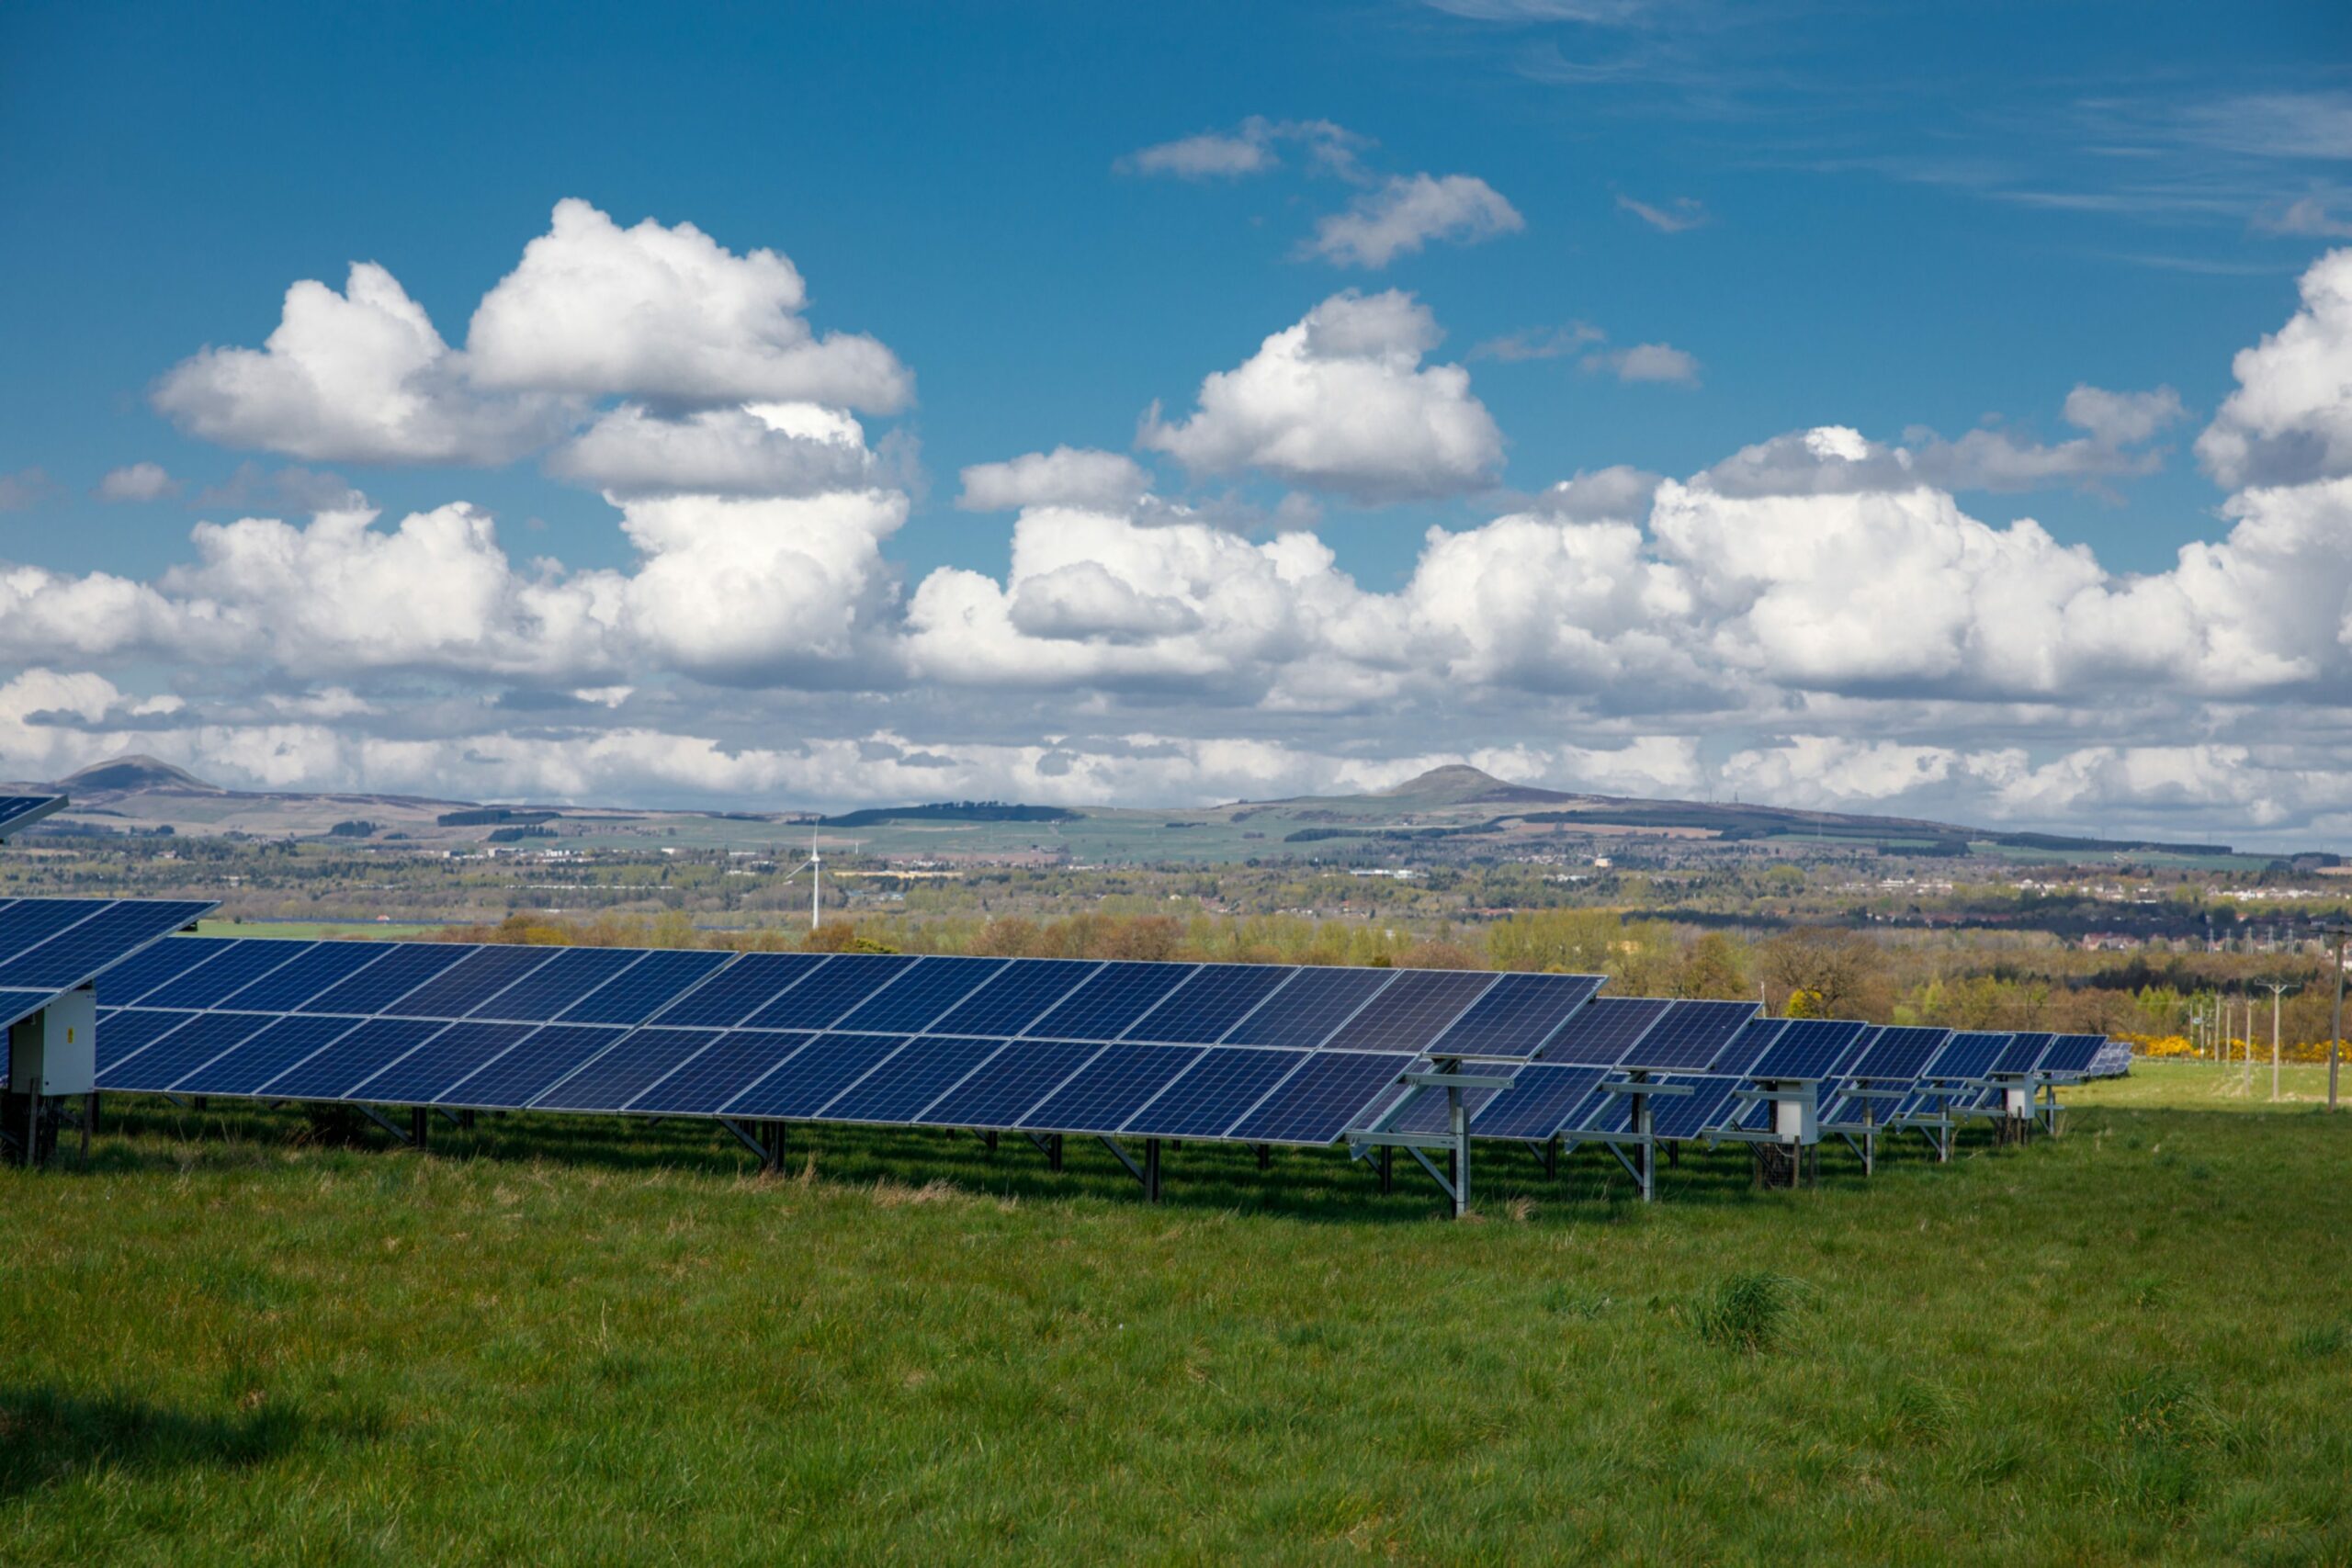 Black solar panels in a field